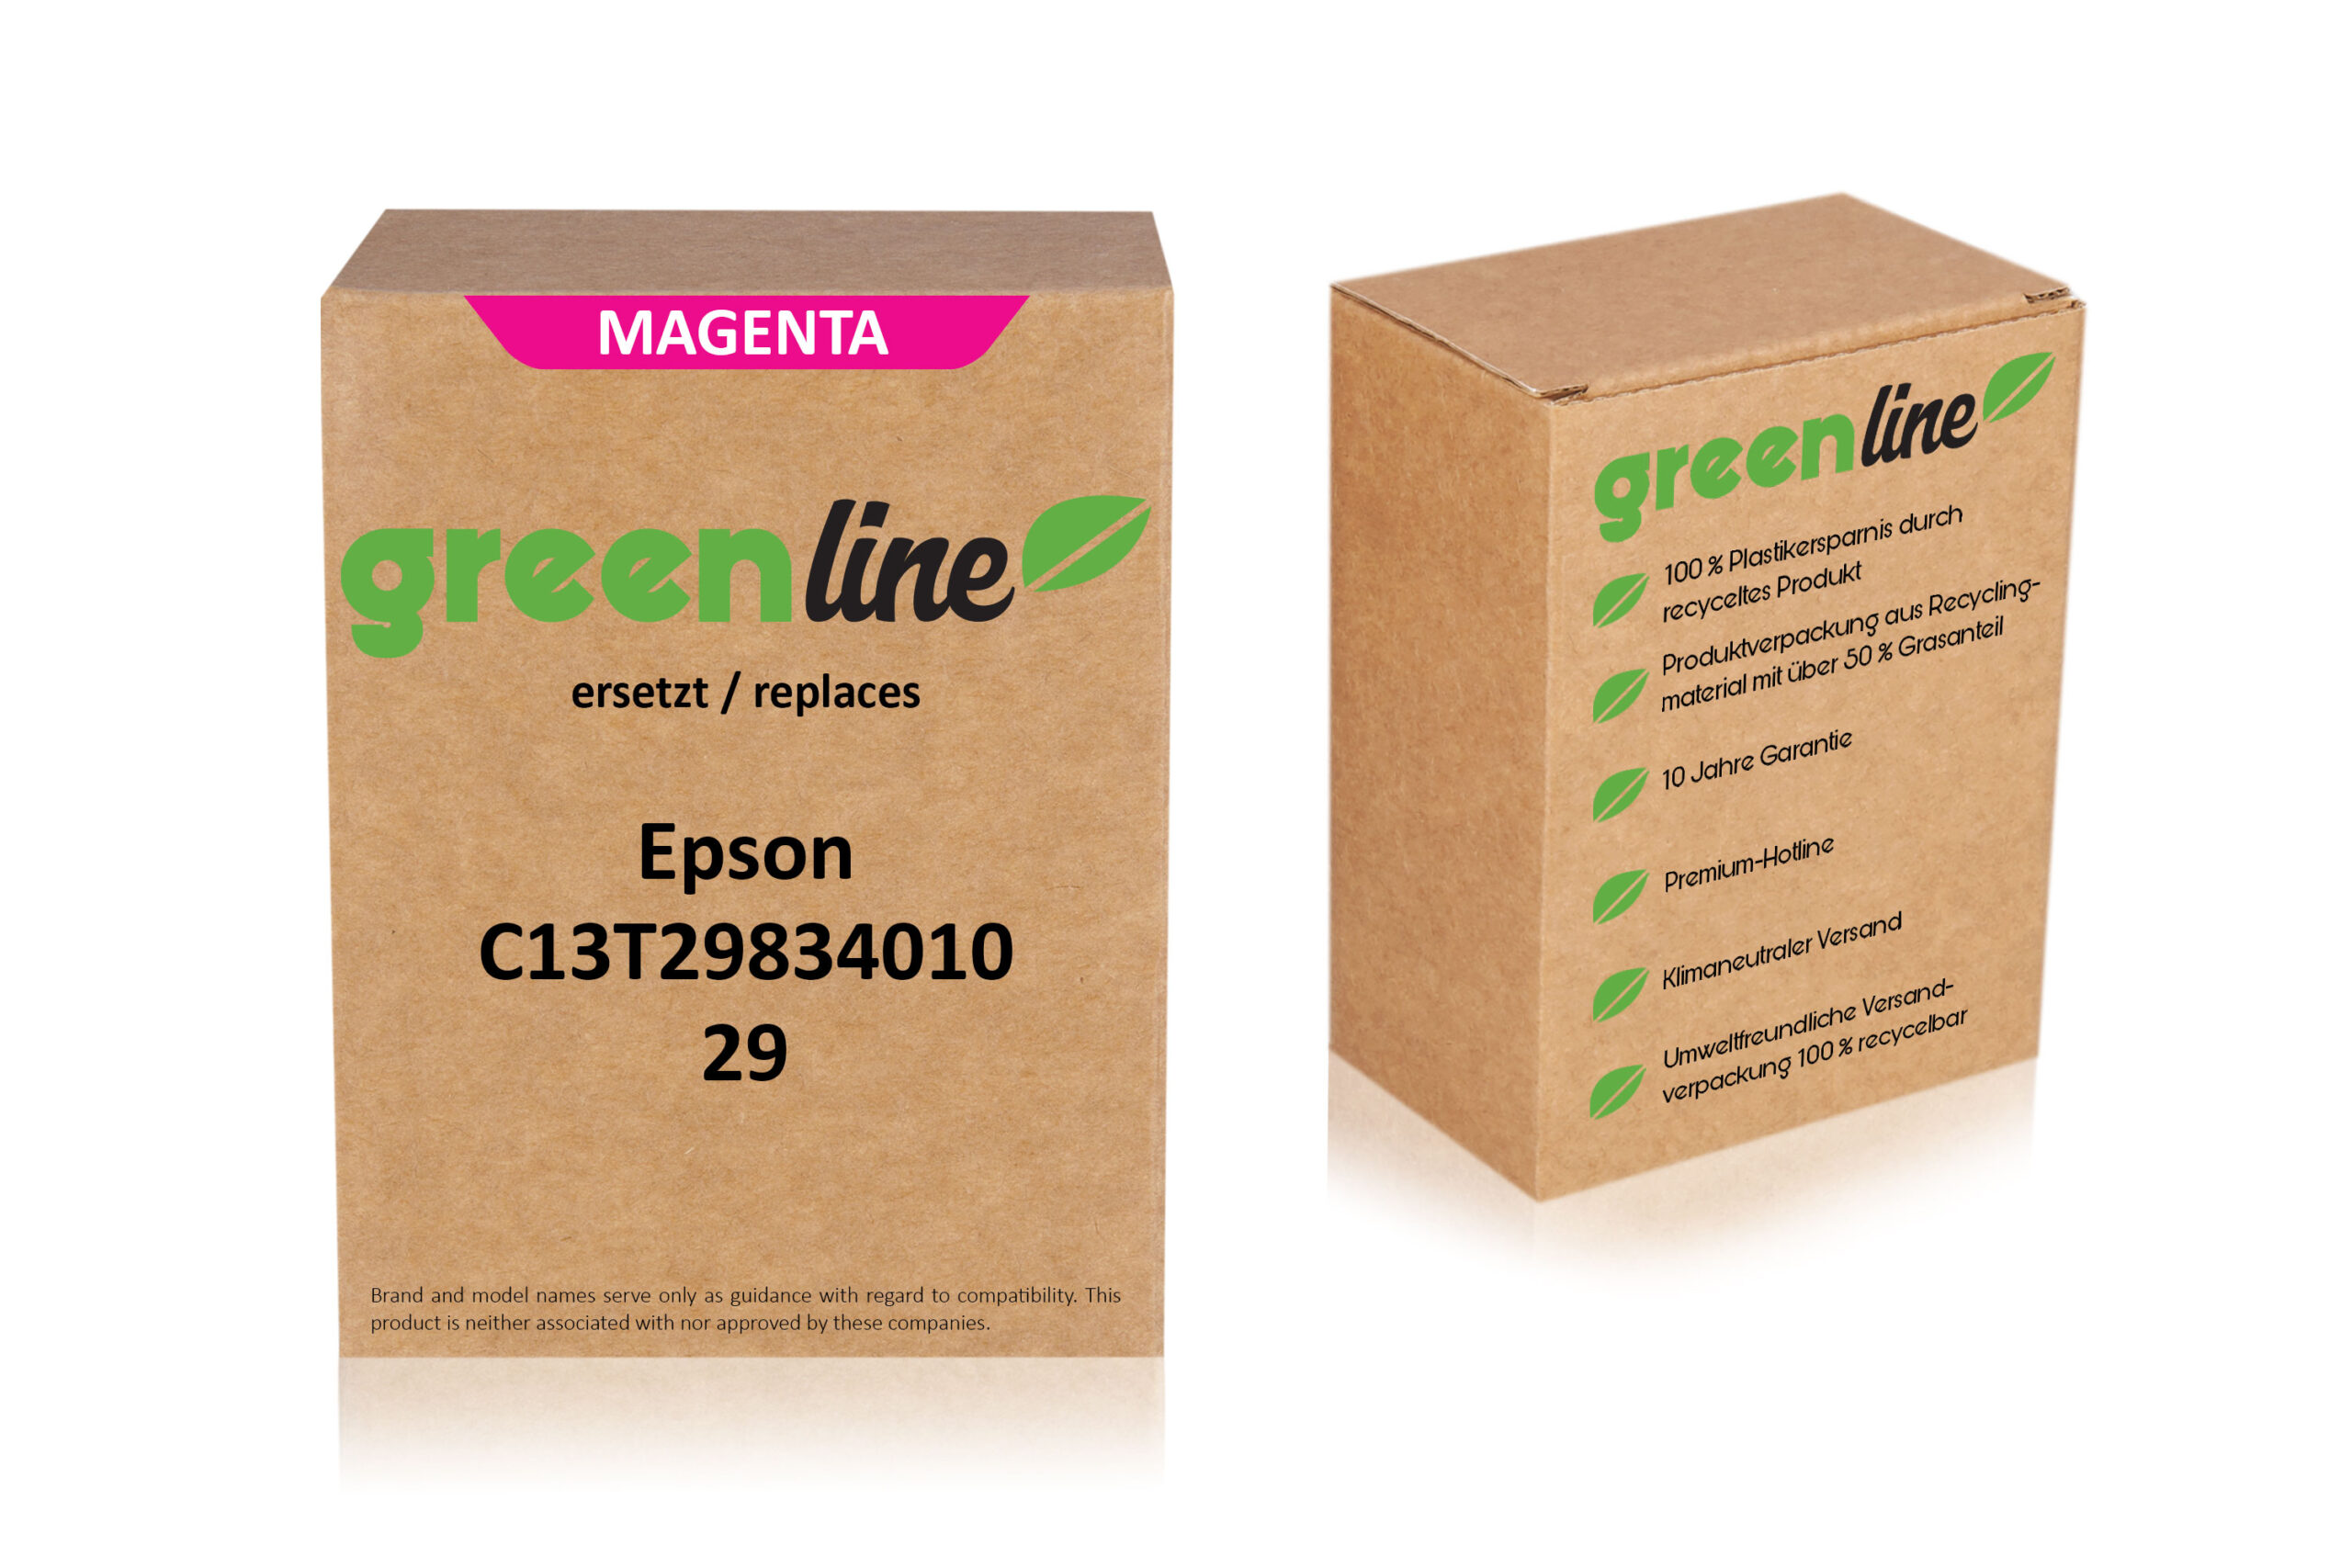 greenline kompatibel zu  Epson C 13 T 29834010 / 29 XL Tintenpatrone